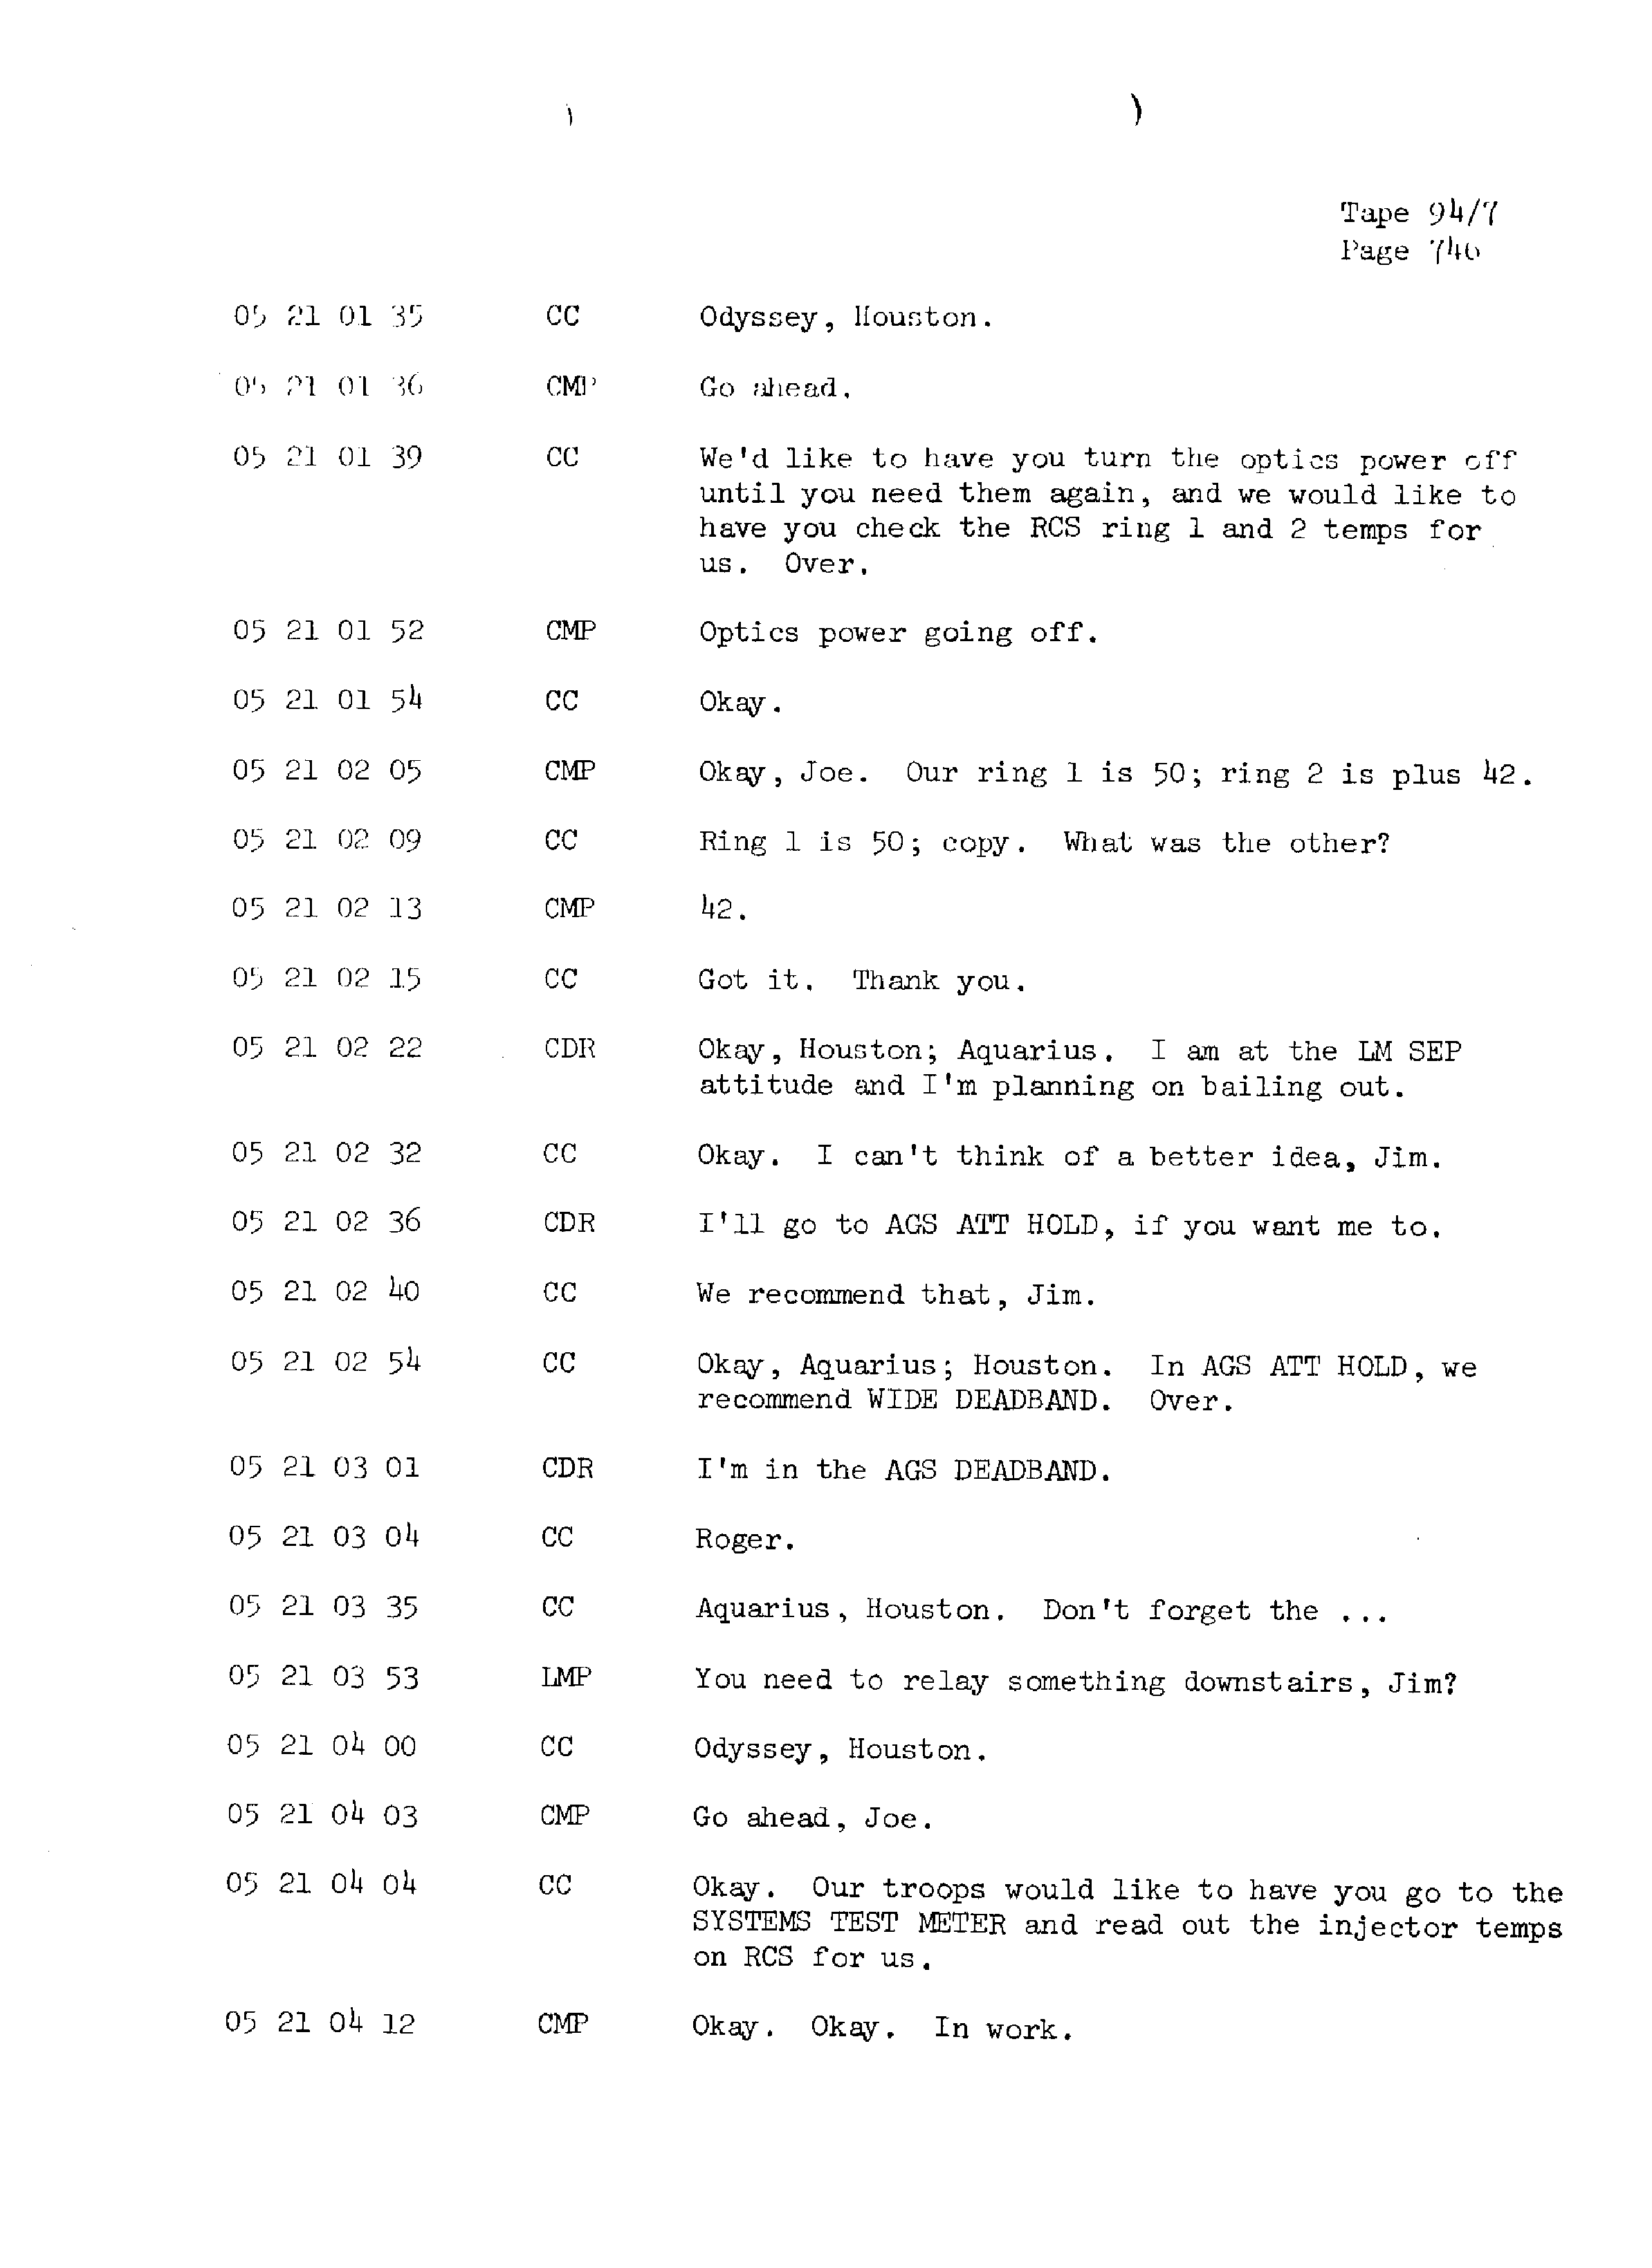 Page 753 of Apollo 13’s original transcript